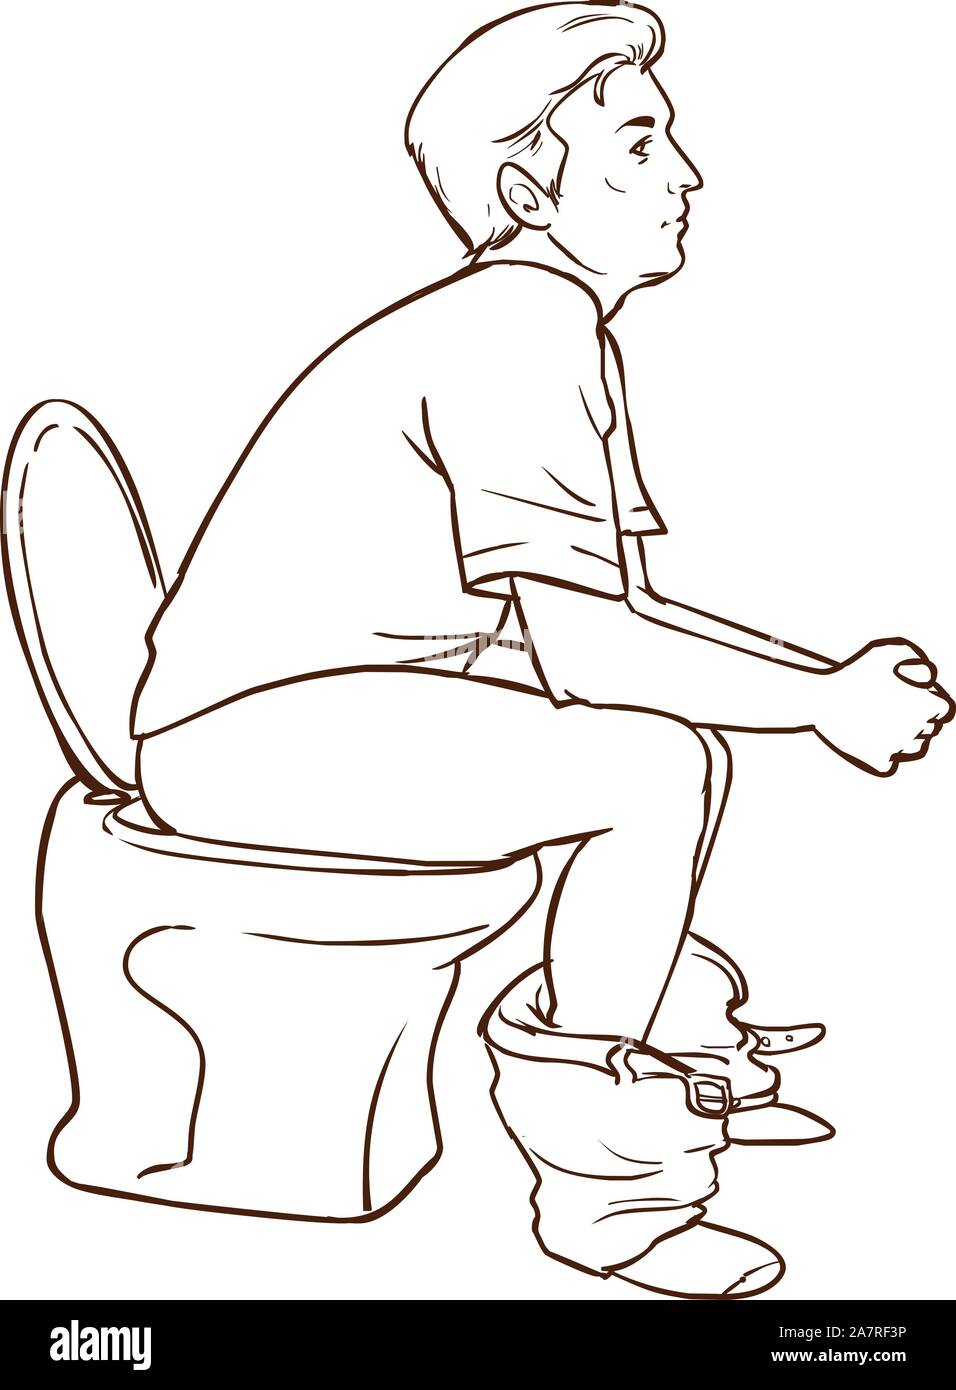 Man sitting on toilet vector illustration Stock Vector